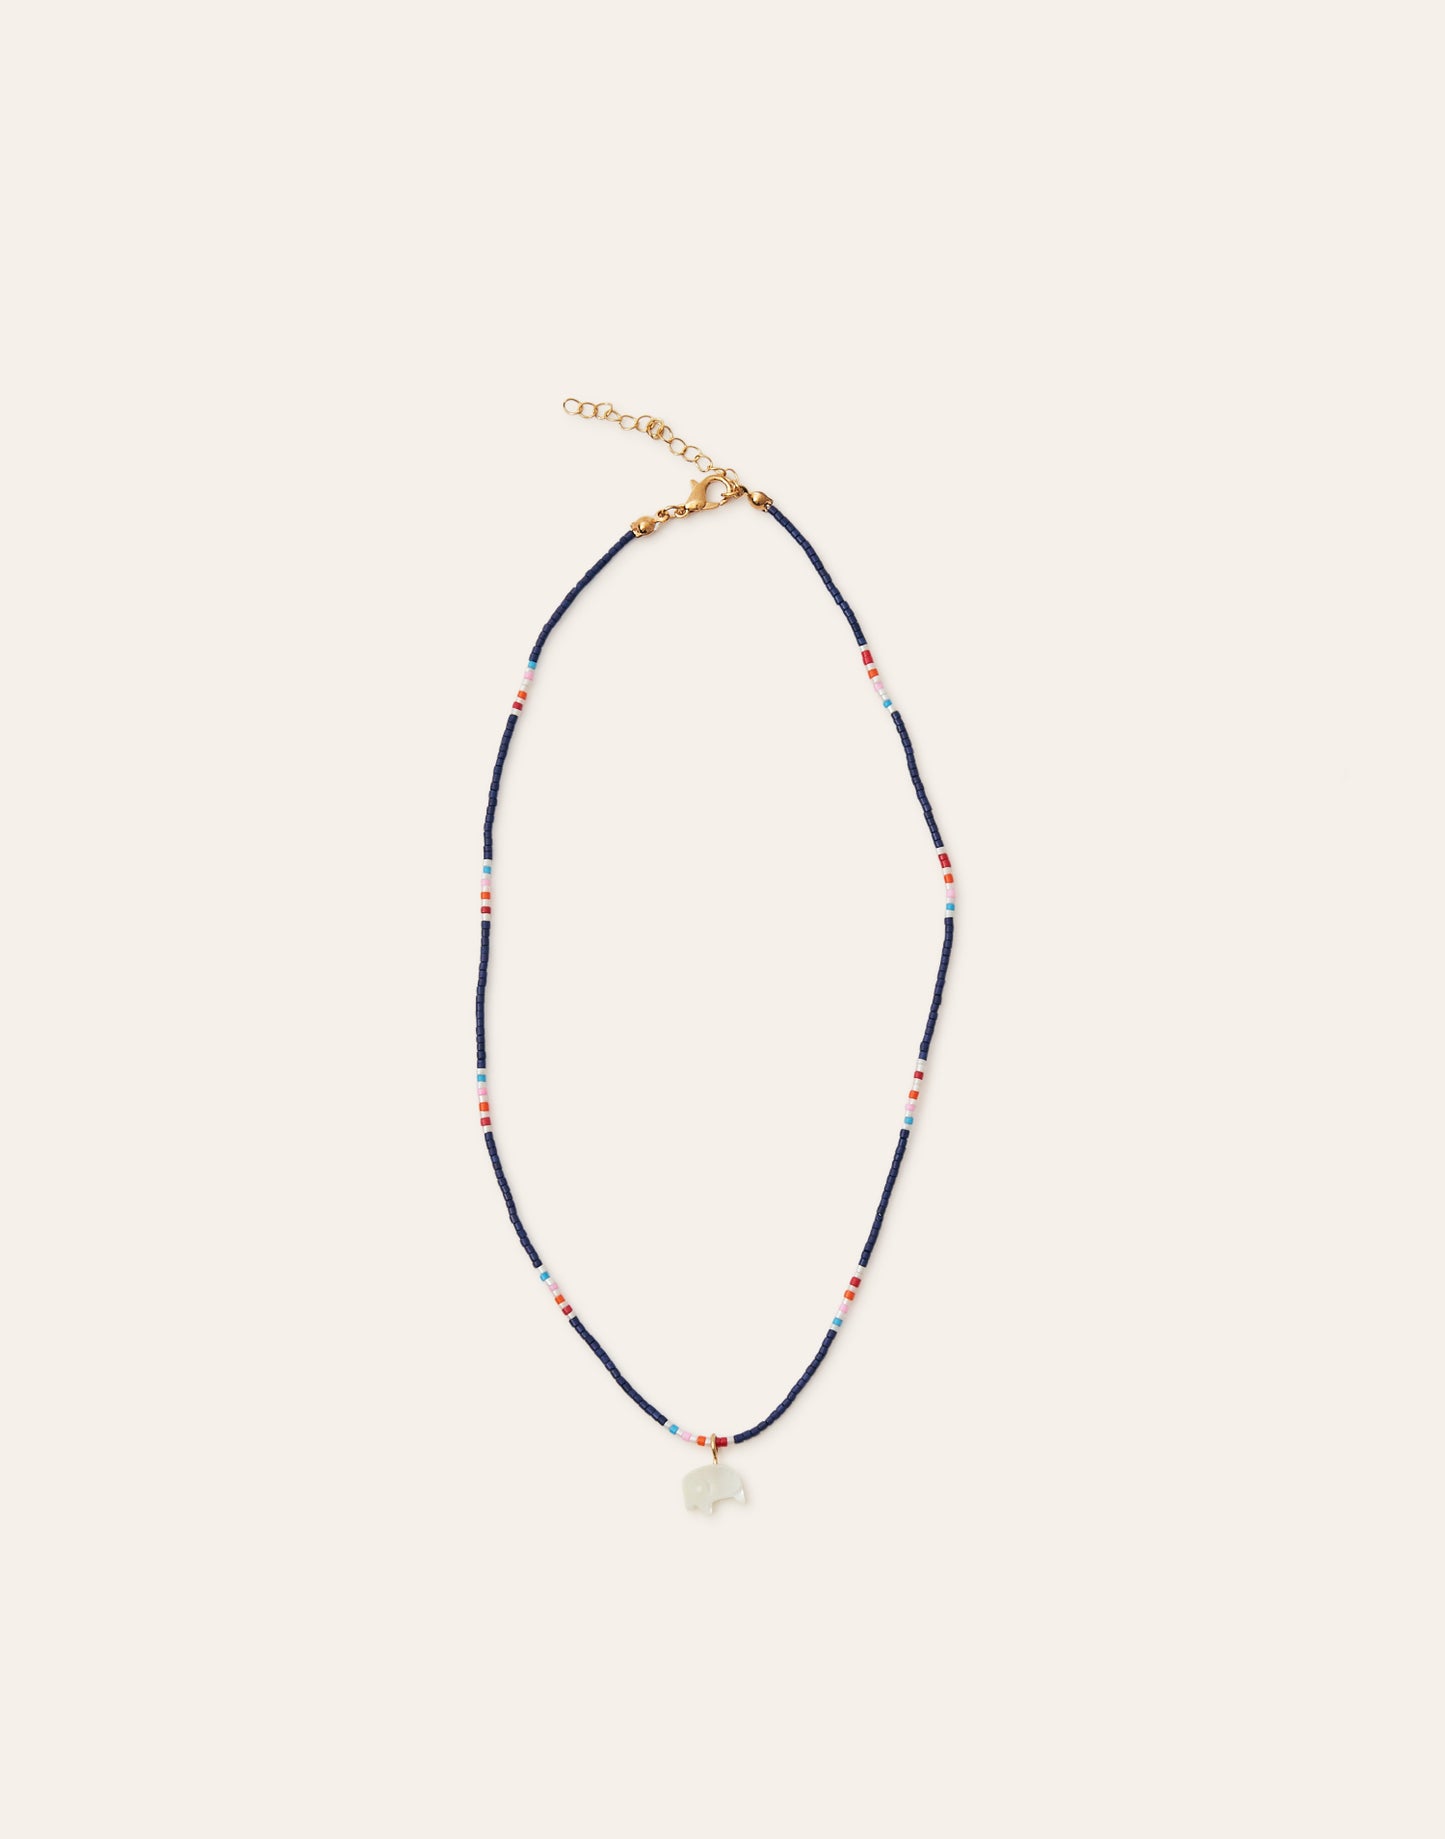 Elephant beads necklace